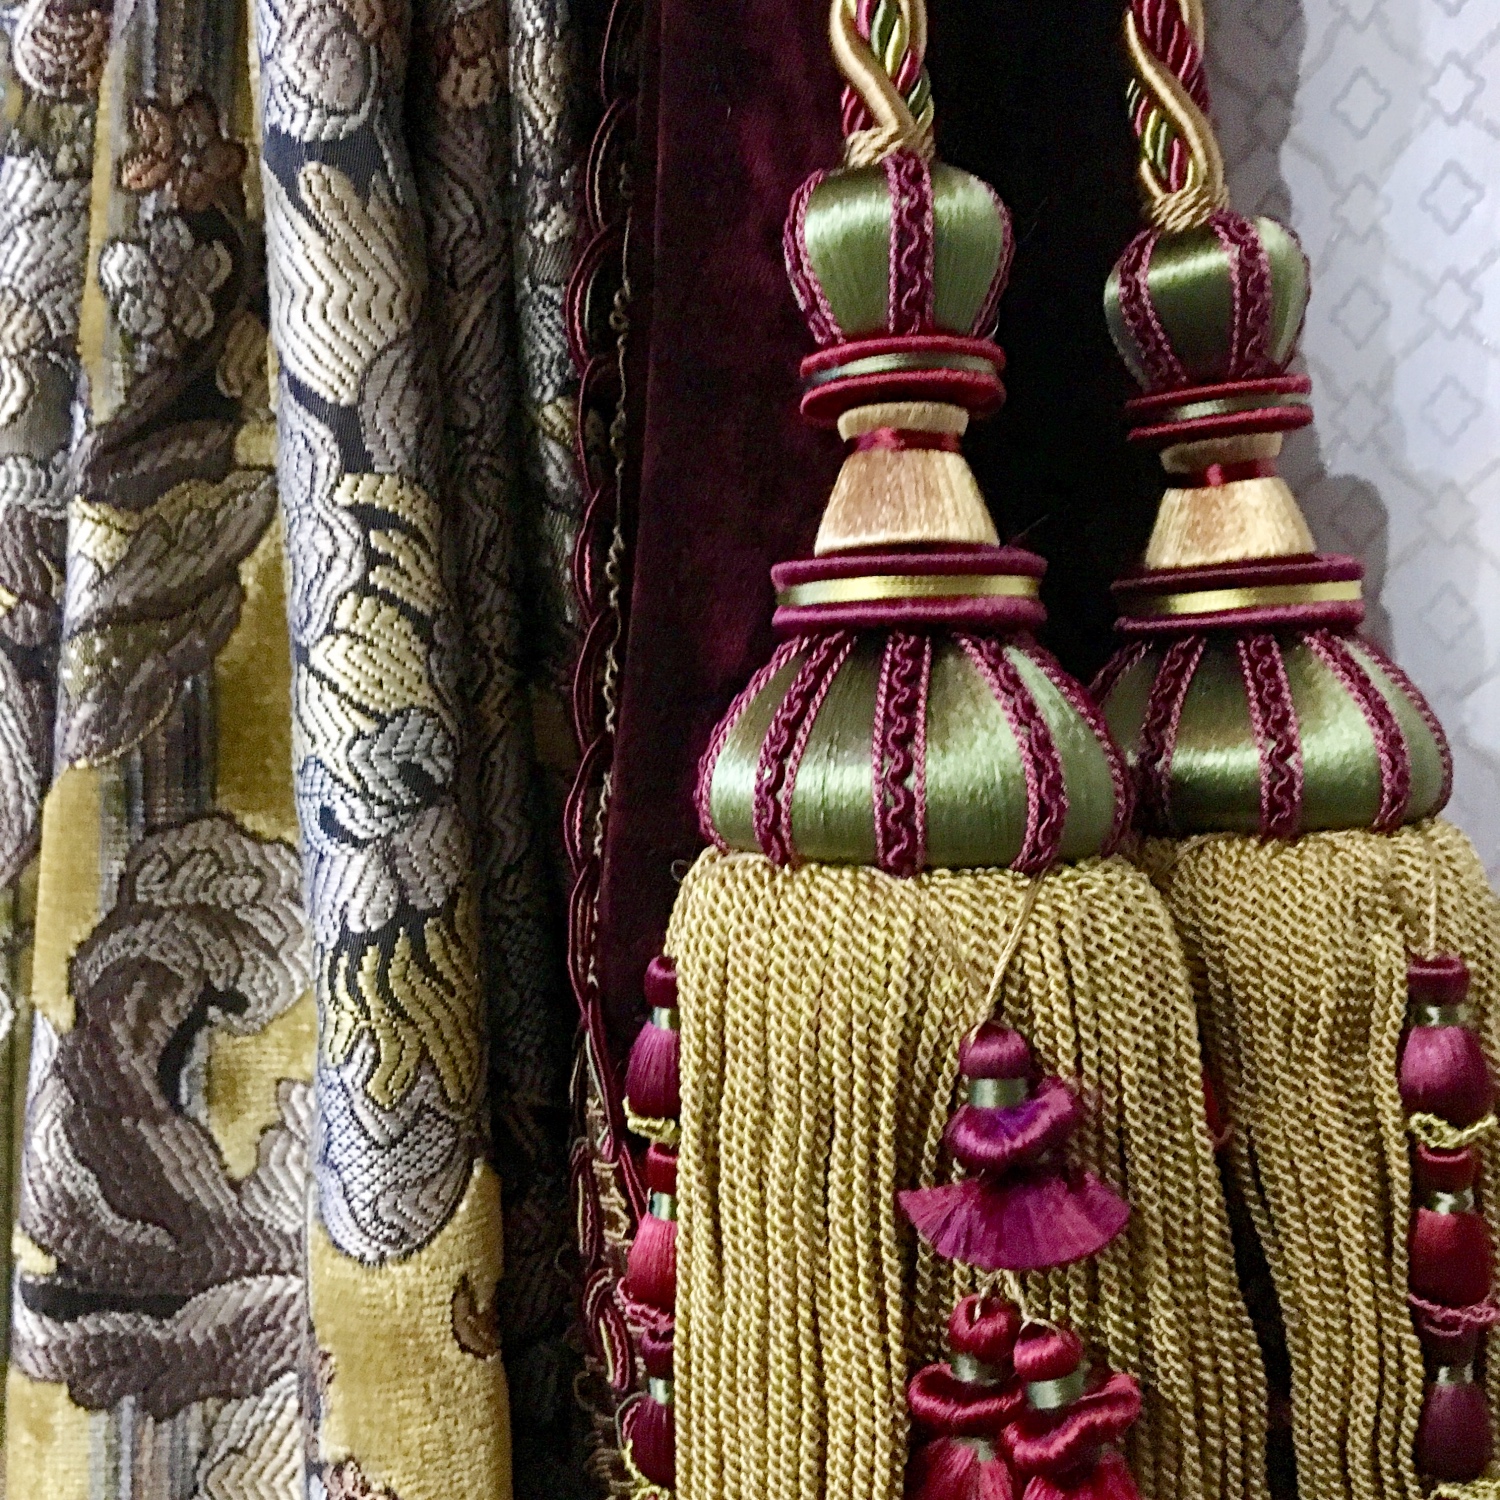 Портфолио дизайнеров по выбору текстиля для пошива штор, покрывал, подушек, скатертей, чехлов